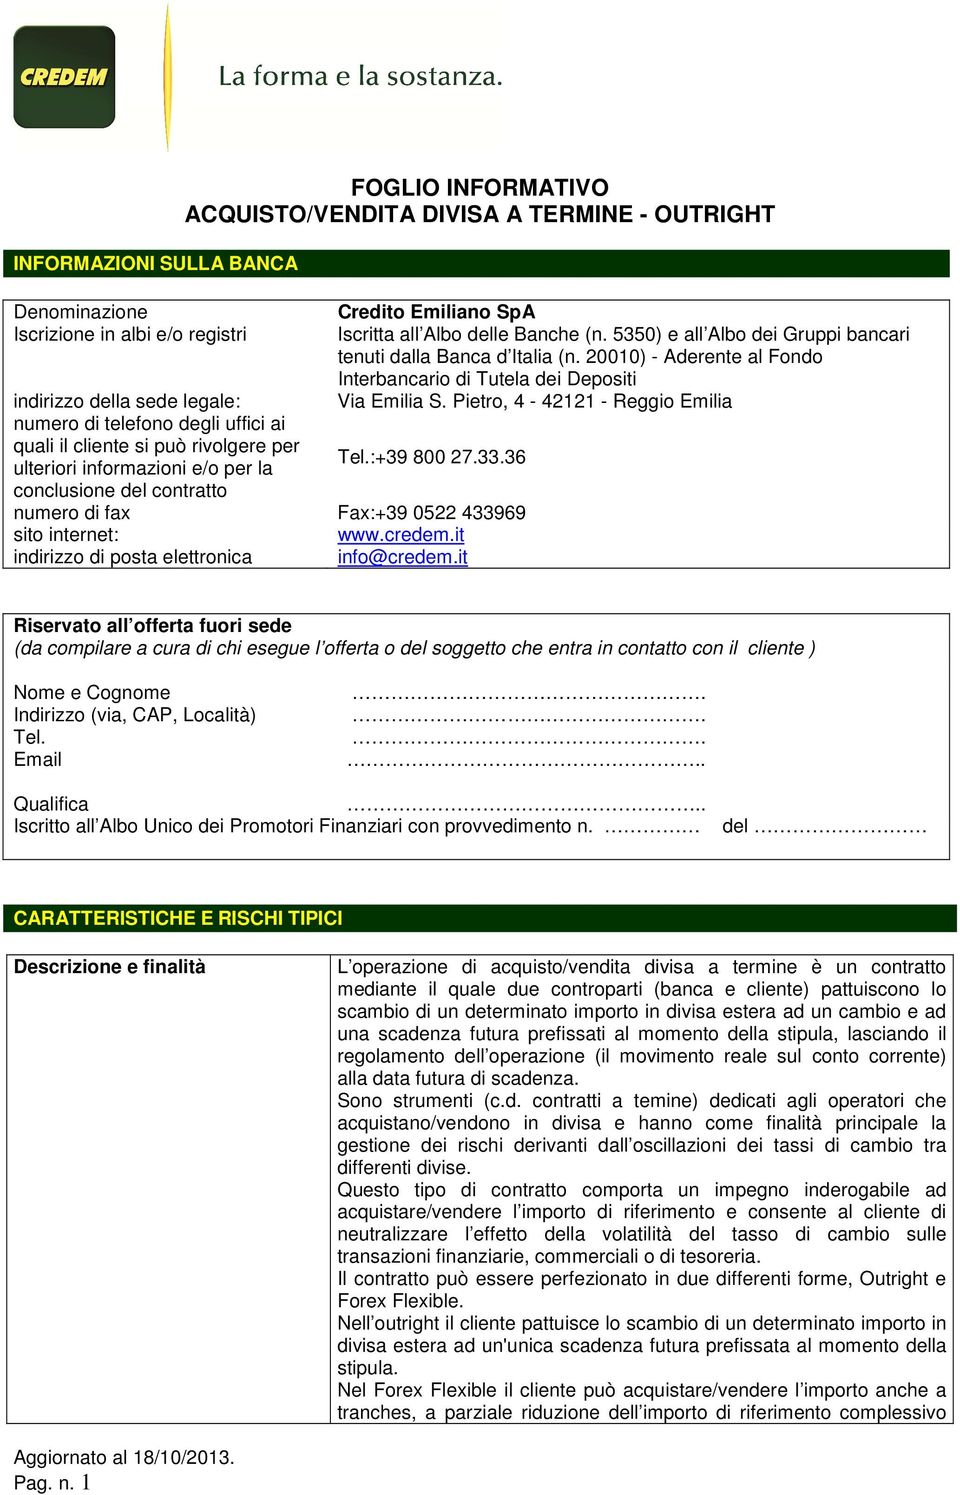 Pietro, 4-42121 - Reggio Emilia numero di telefono degli uffici ai quali il cliente si può rivolgere per ulteriori informazioni e/o per la Tel.:+39 800 27.33.